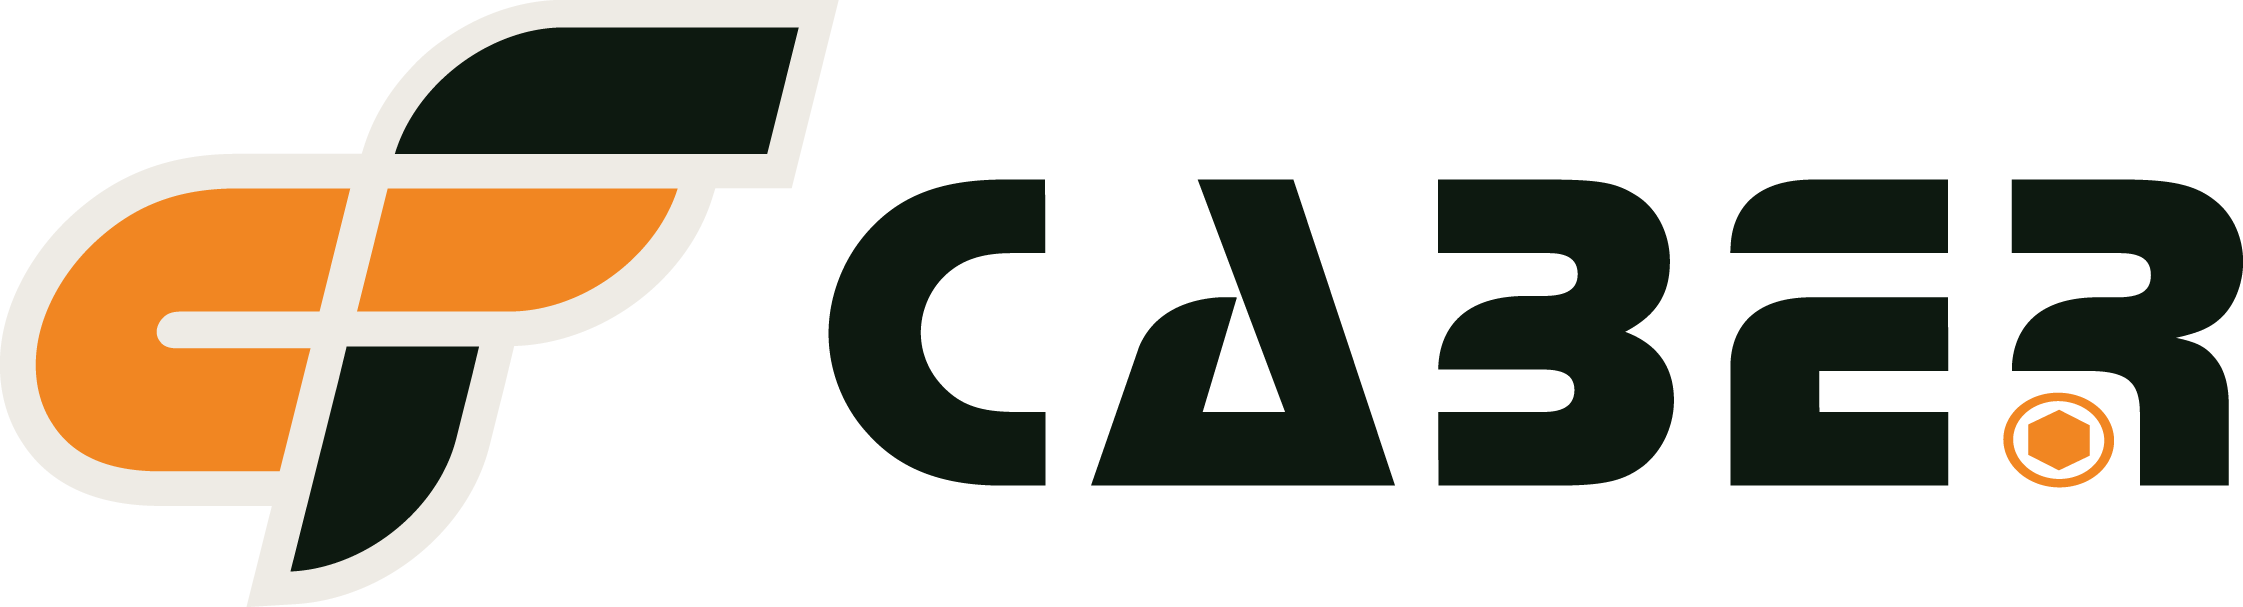 Logo Caber